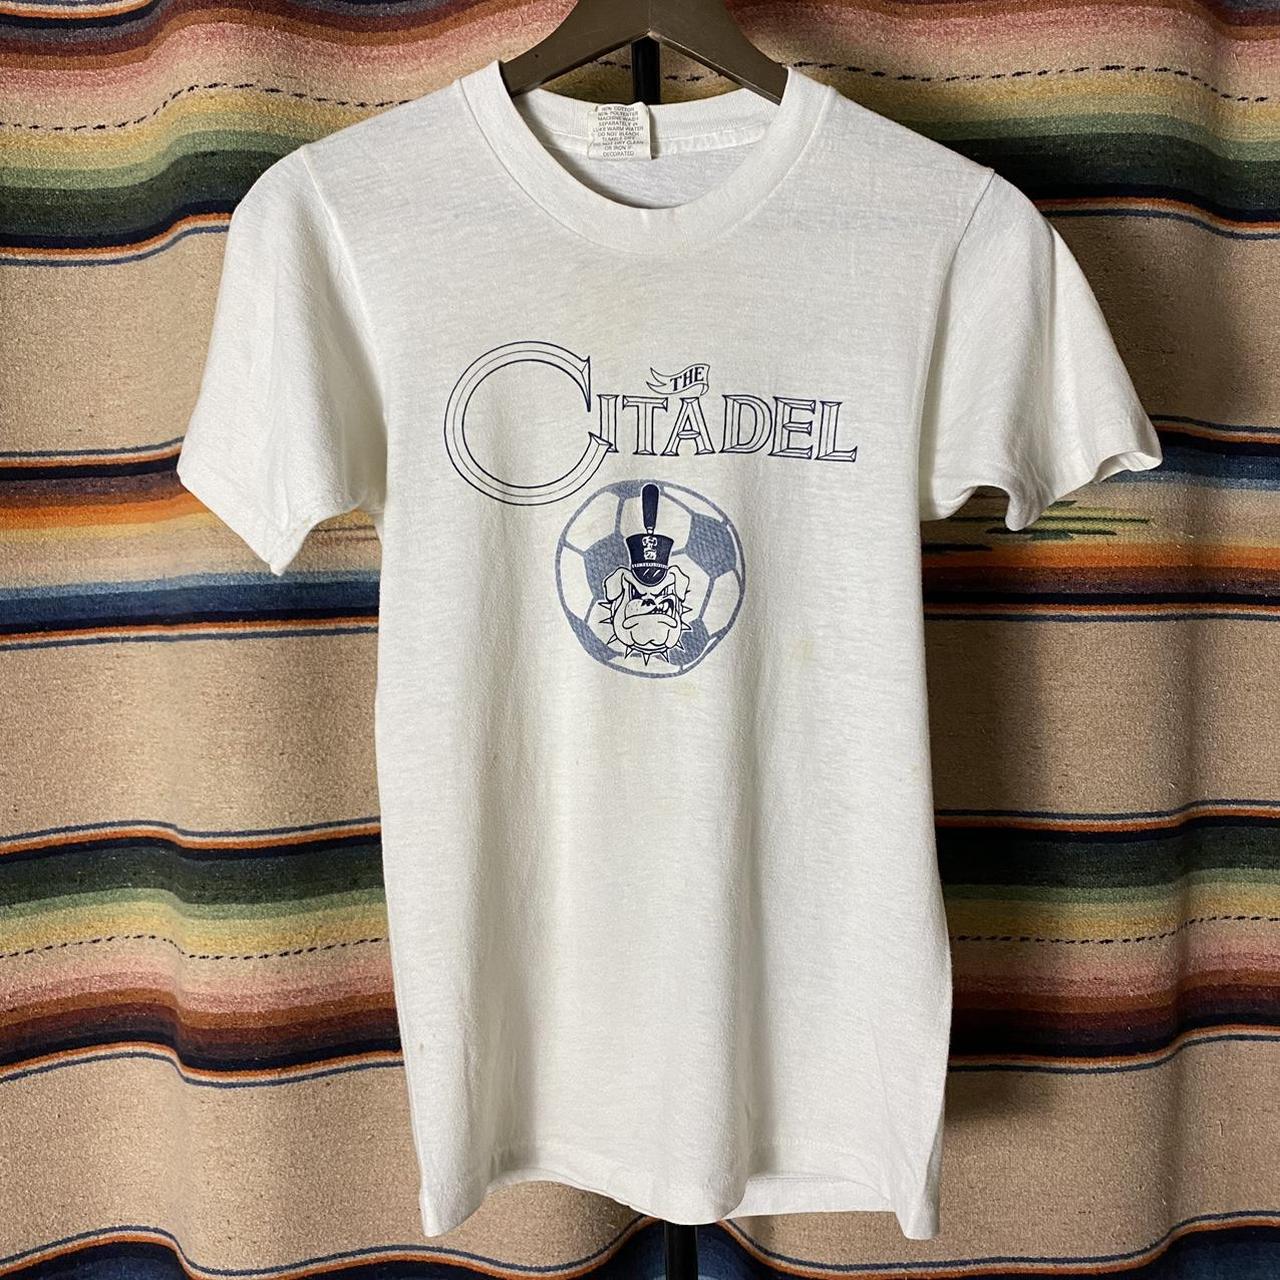 Vintage 70s Grateful Dead T-shirt